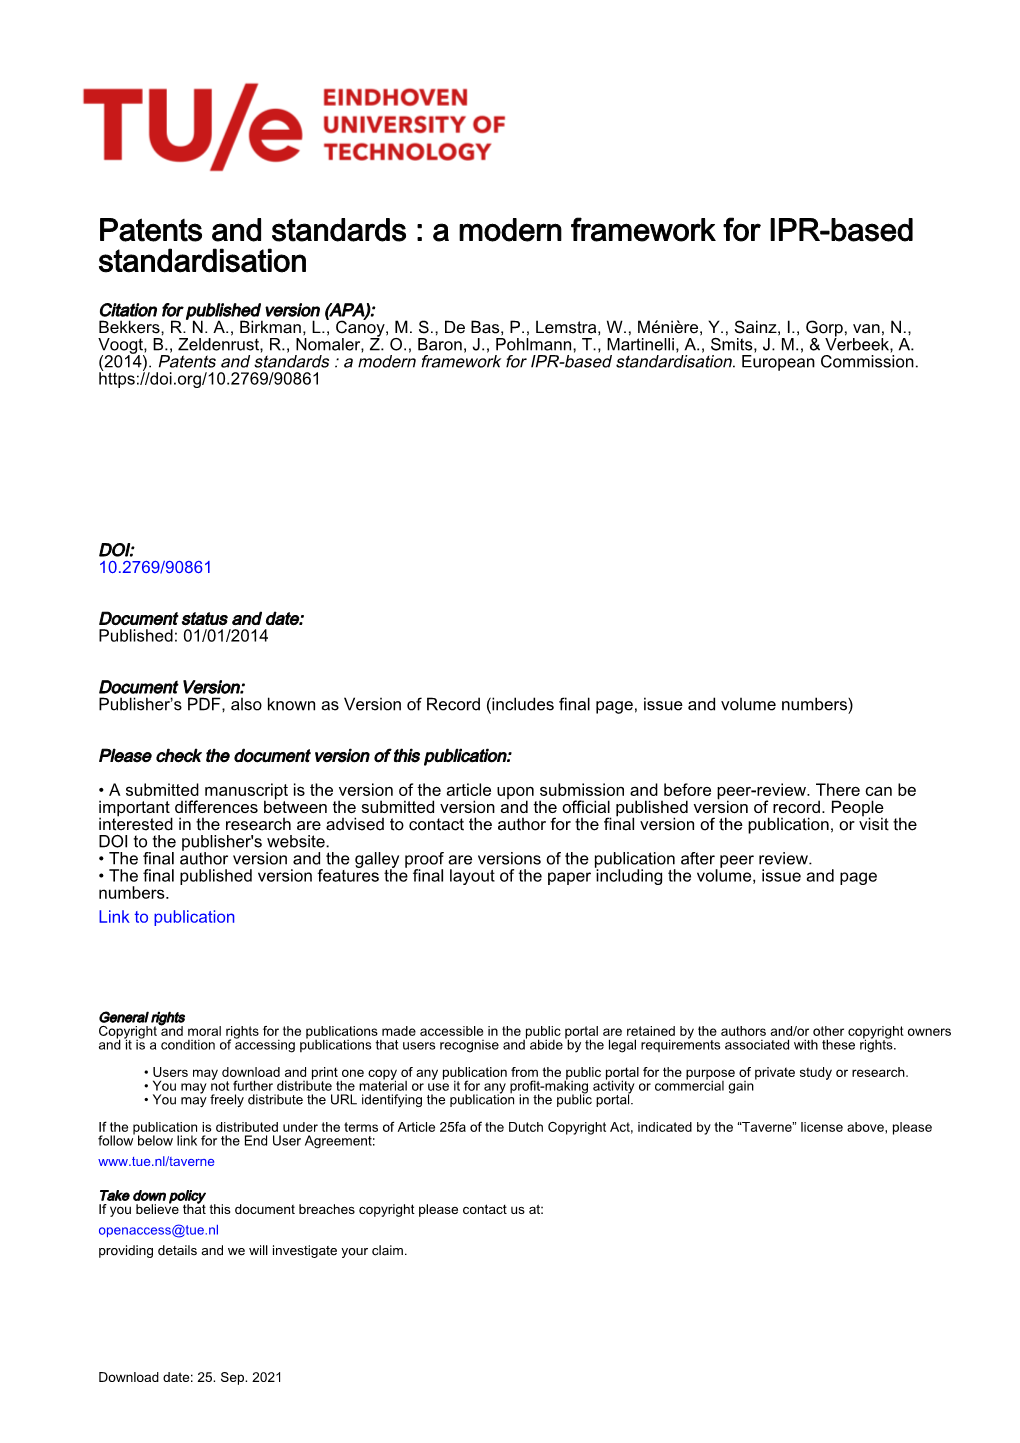 Patents and Standards : a Modern Framework for IPR-Based Standardisation